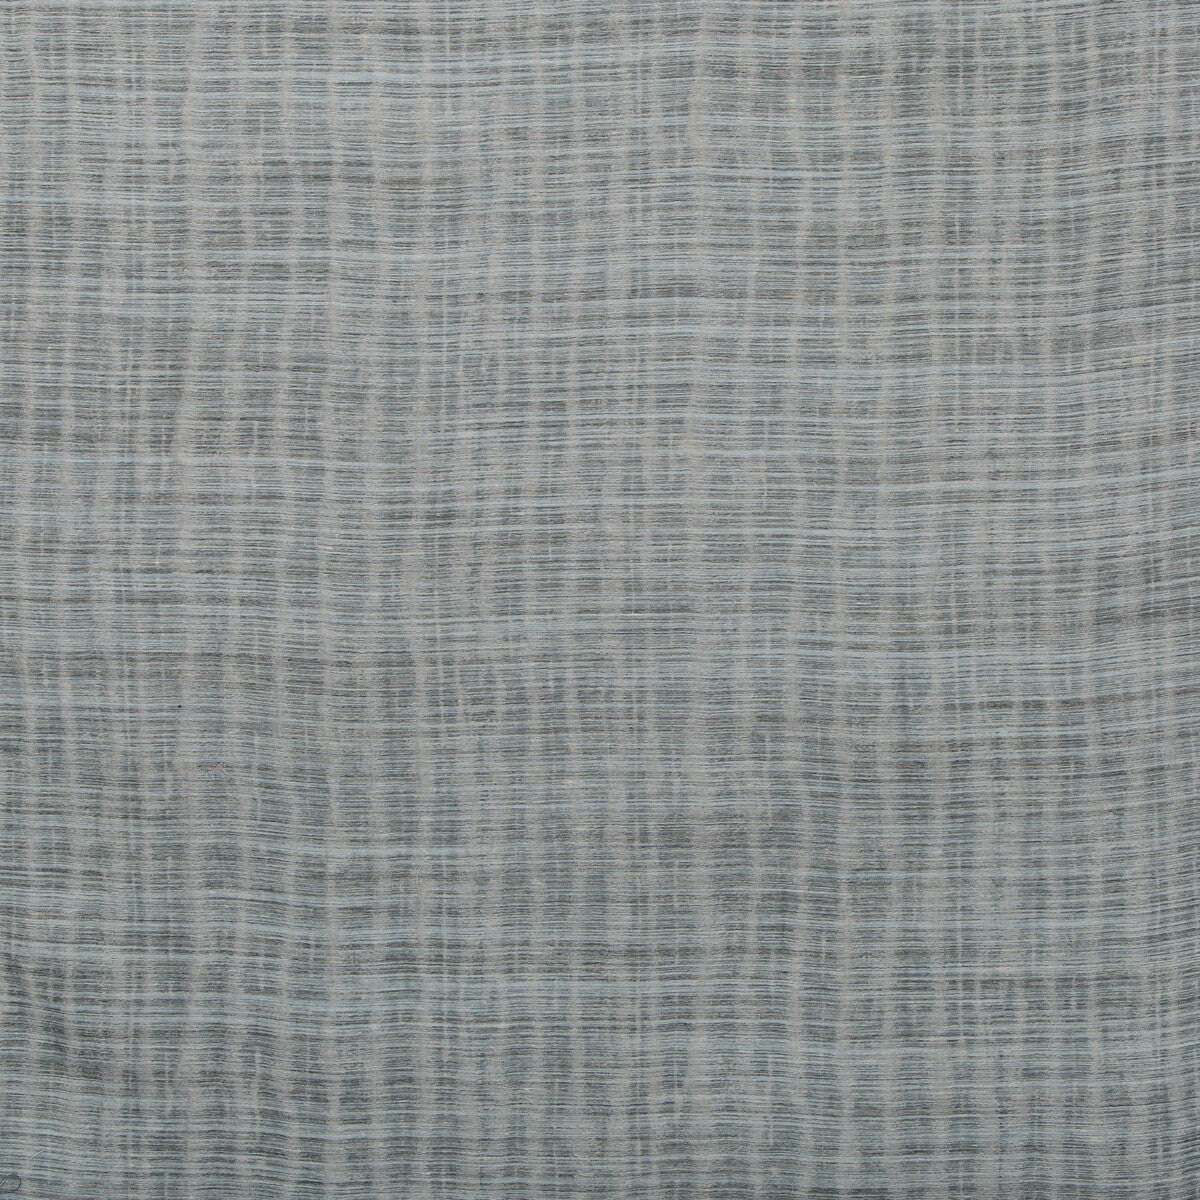 Kravet Basics fabric in 4694-5 color - pattern 4694.5.0 - by Kravet Basics